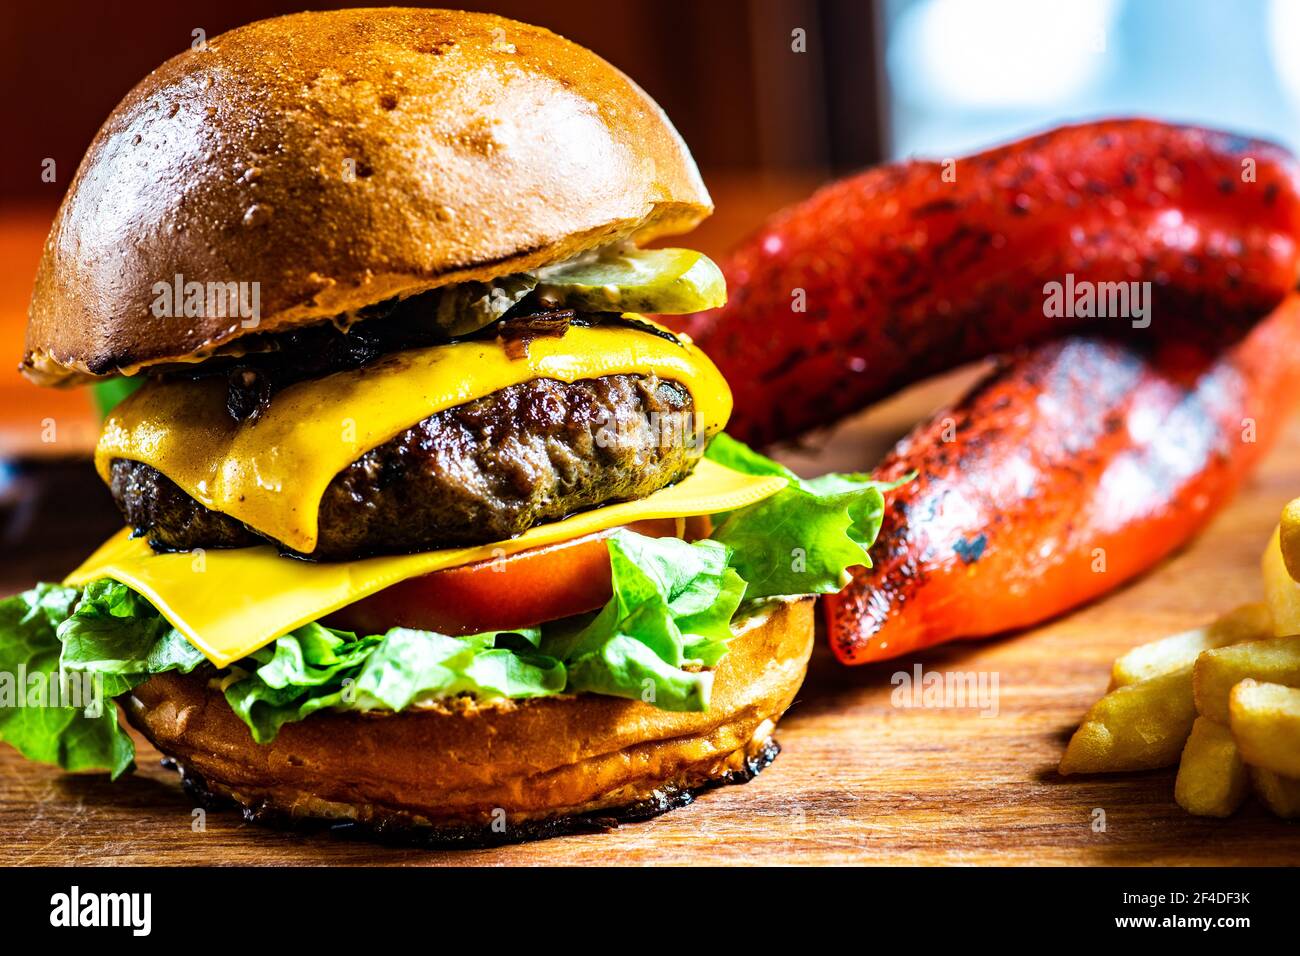 Gros plan d'un cheeseburger à la tomate, au cornichon et à la laitue, servi avec des frites et des poivrons rouges rôtis Banque D'Images